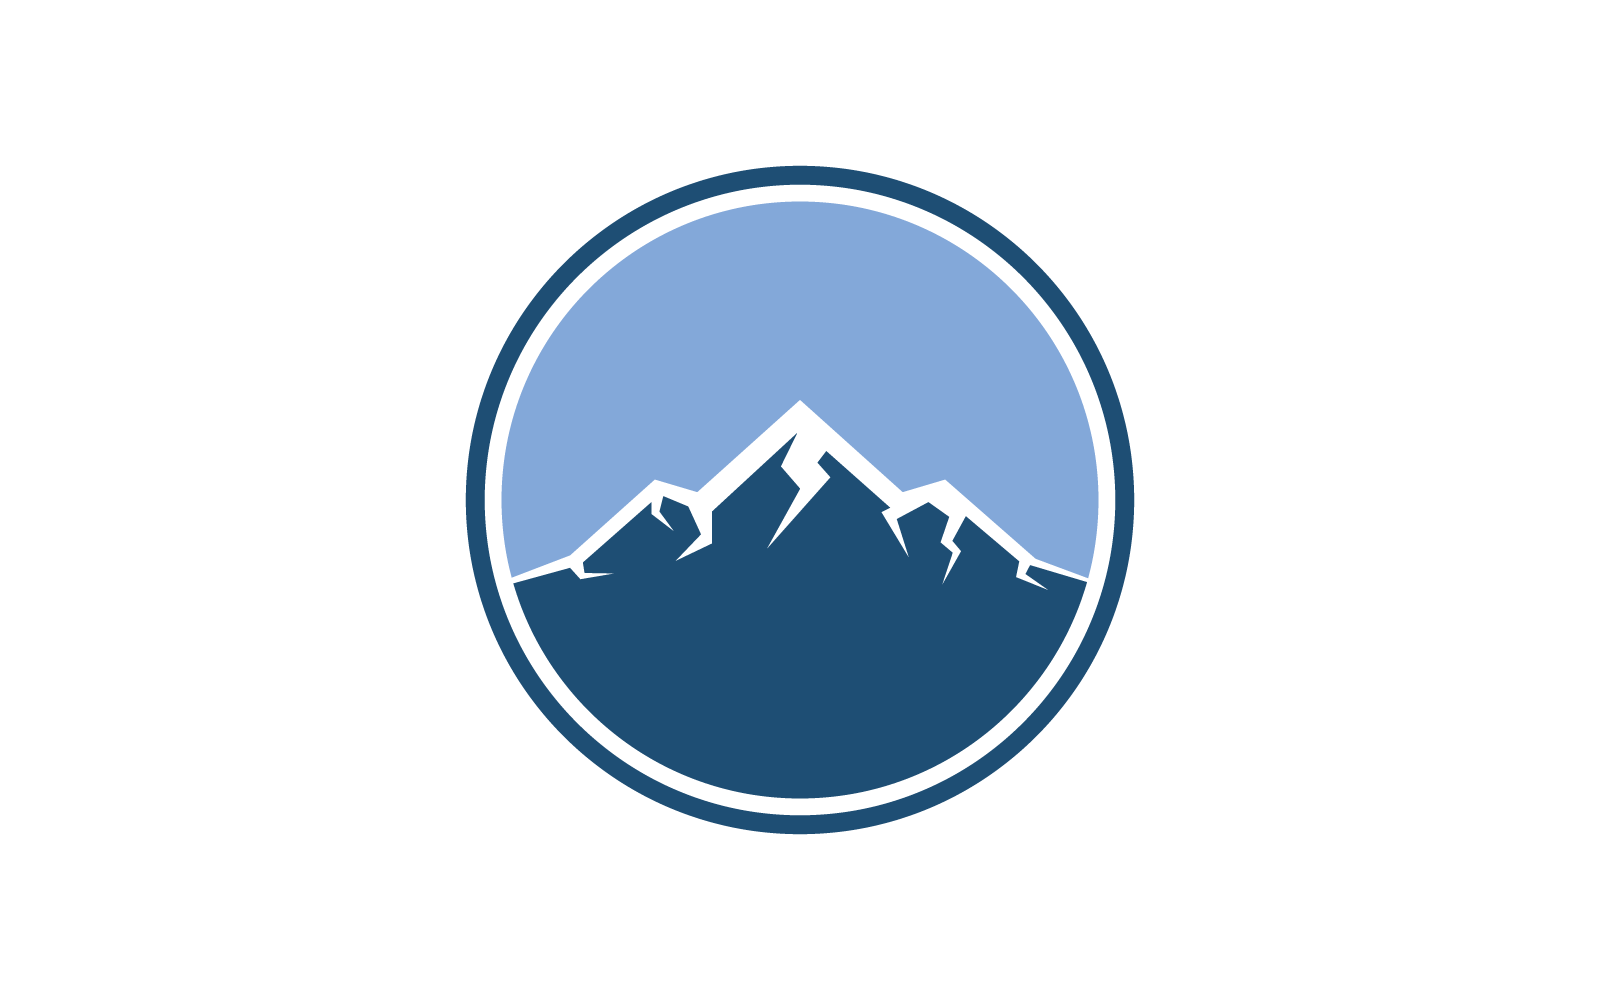 Dağ illüstrasyon logo vektör şablonu düz tasarımı